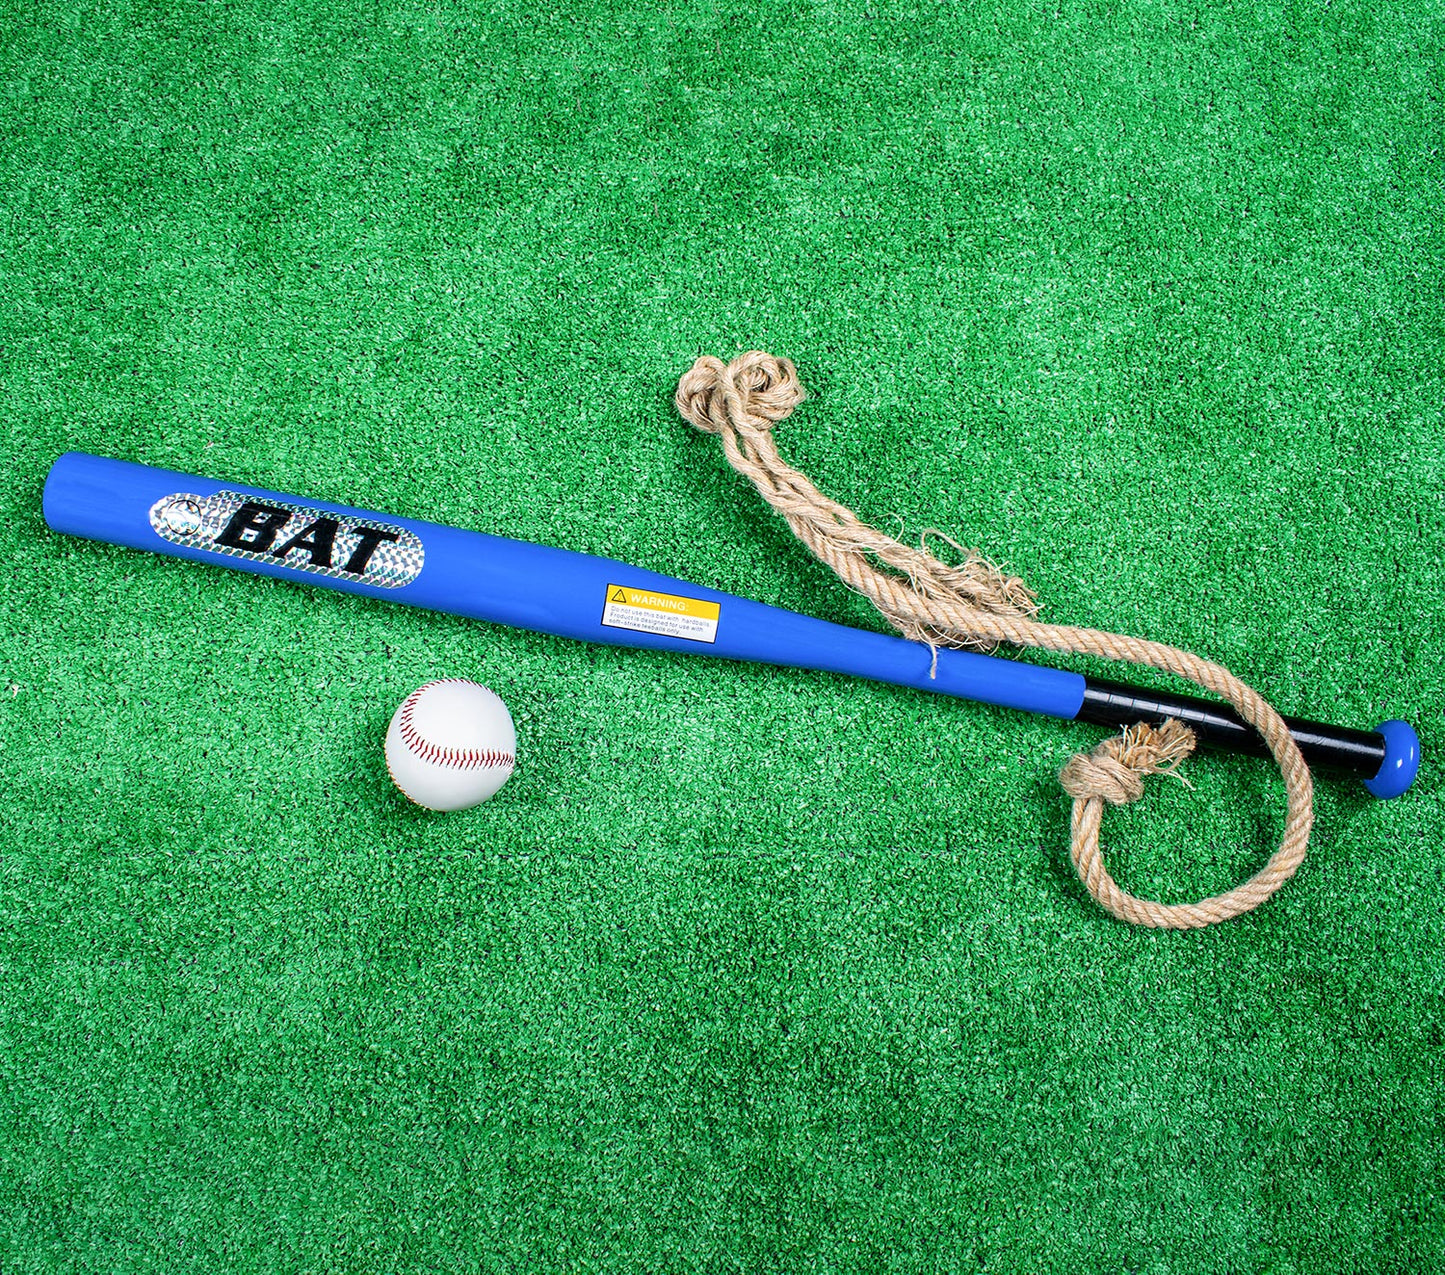 مضرب بيسبول عصا حديد - خامة معدن ثقيل - لوجو الوان عاكسة - لون ازرق - مقاس 32 انش